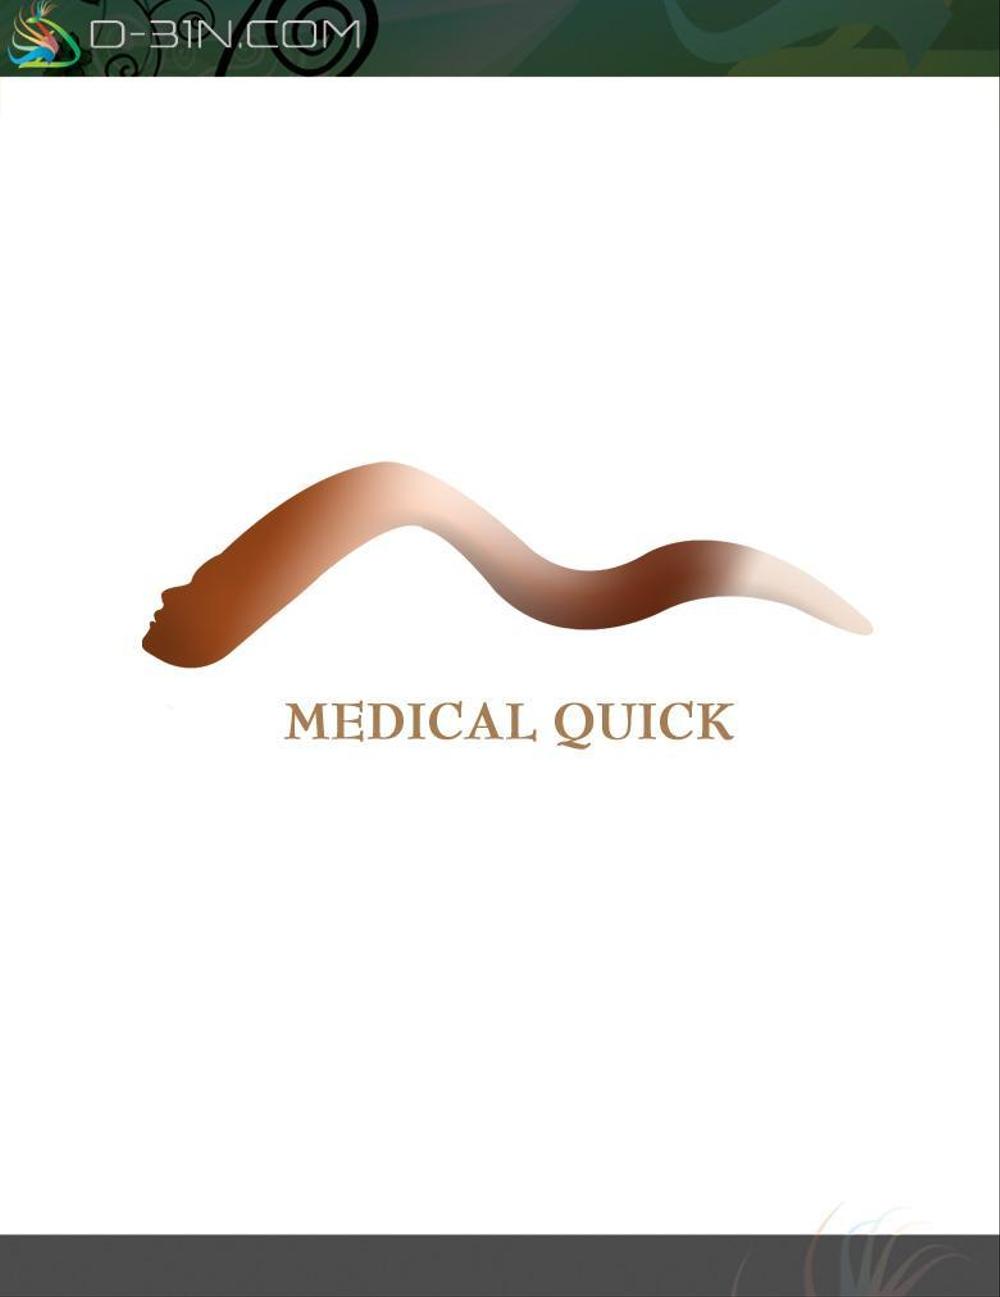 医療用かつら「メディカルクイック」のロゴを募集します。